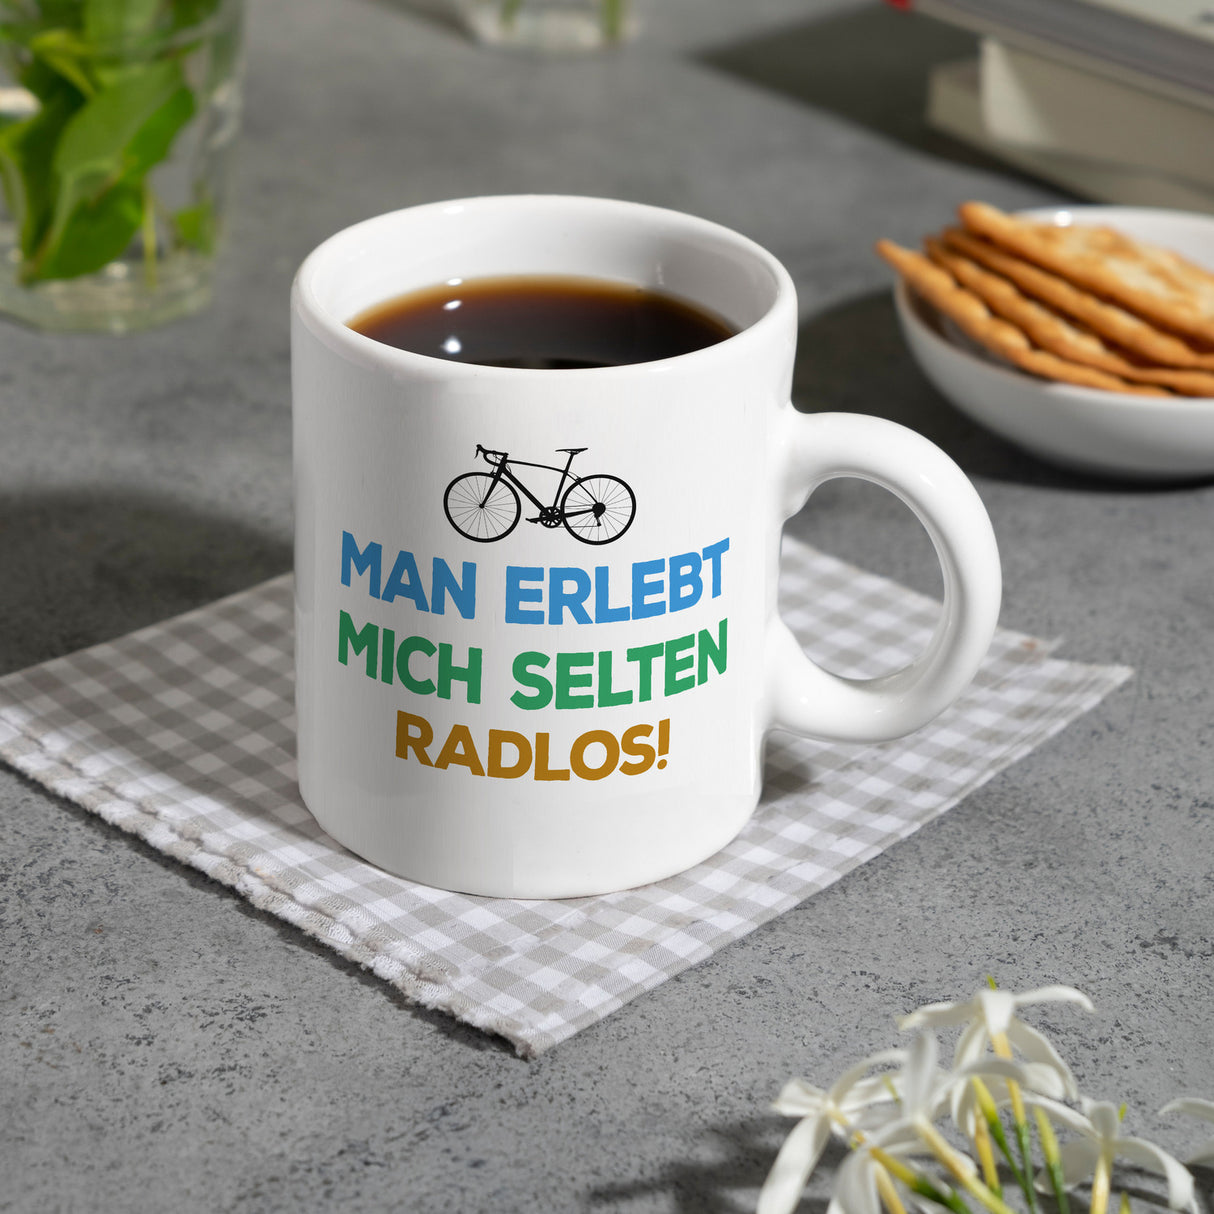 Man erlebt mich selten radlos Kaffeebecher mit Rennrad Motiv